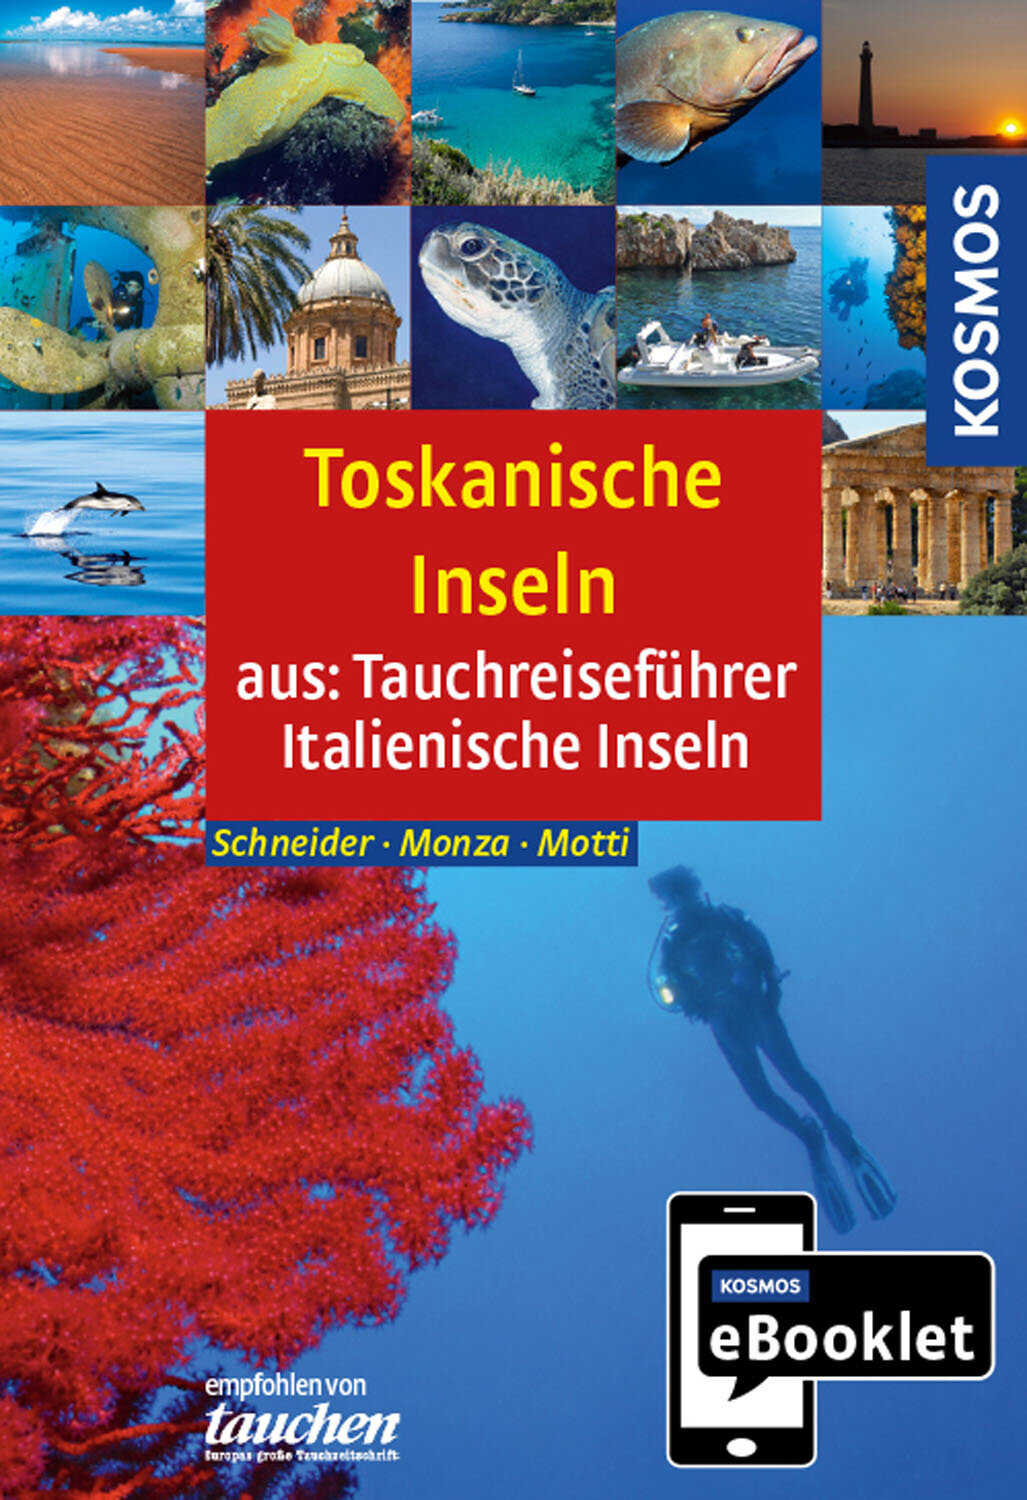 KOSMOS eBooklet: Tauchreiseführer Toskanische Inseln